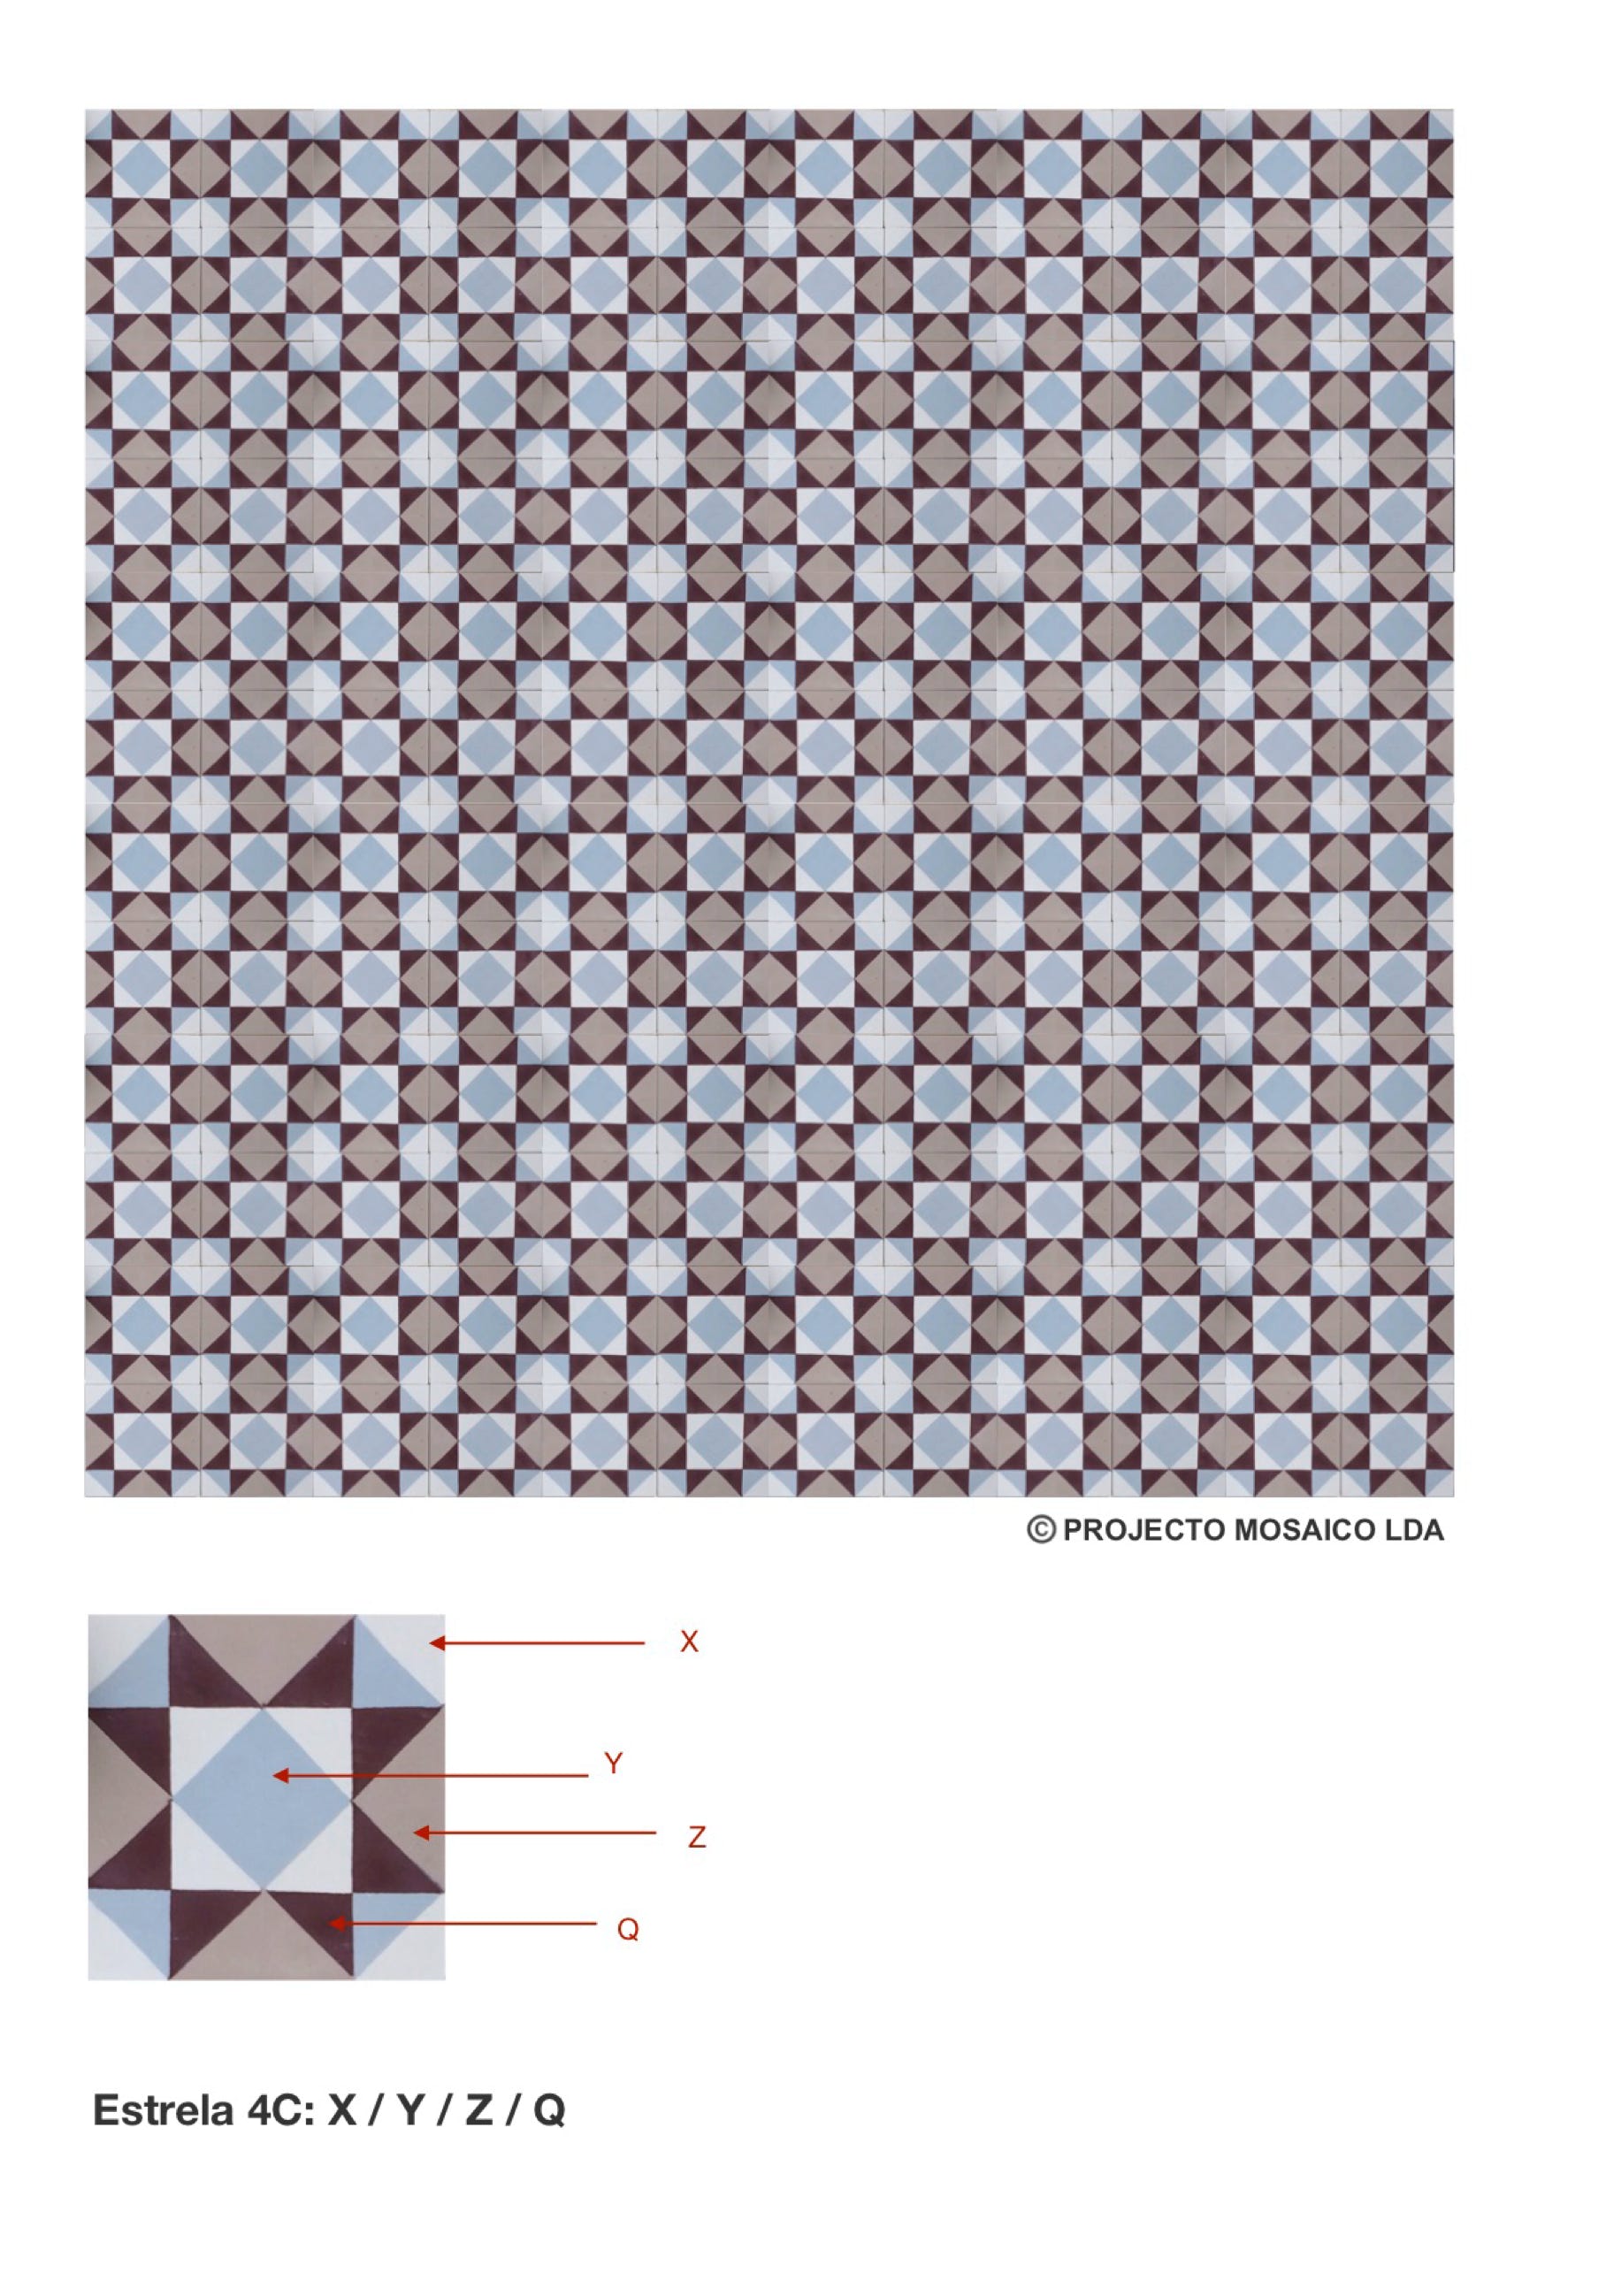 illustração de aplicação do mosaico hidráulico ref: Estrela 4C